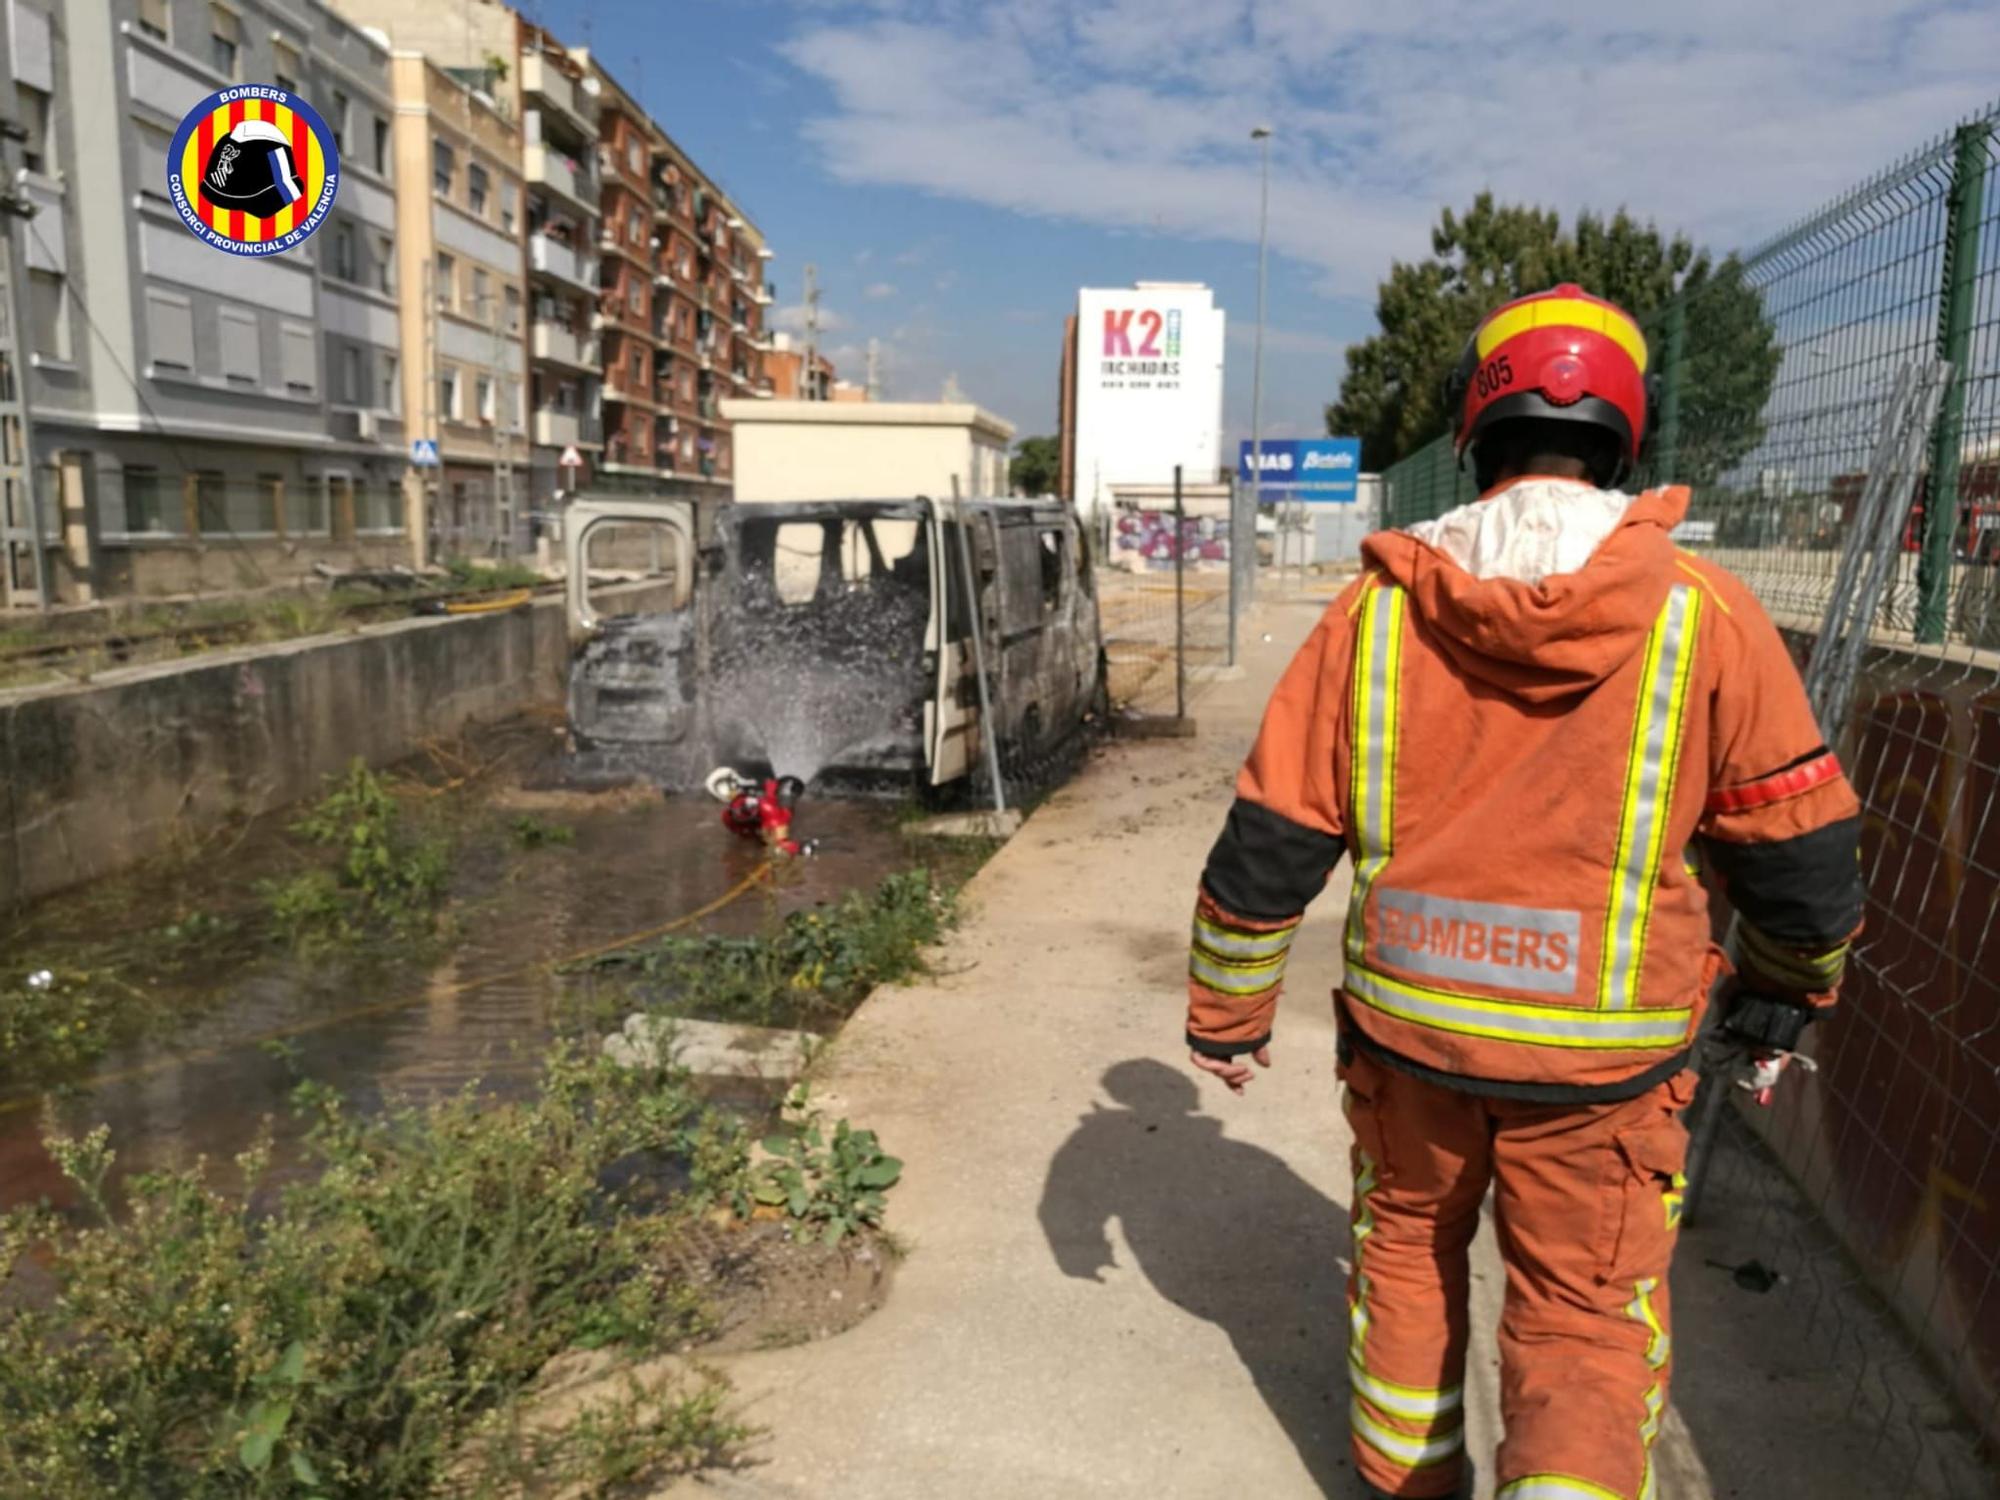 Un operario herido al incendiarse una furgoneta en València